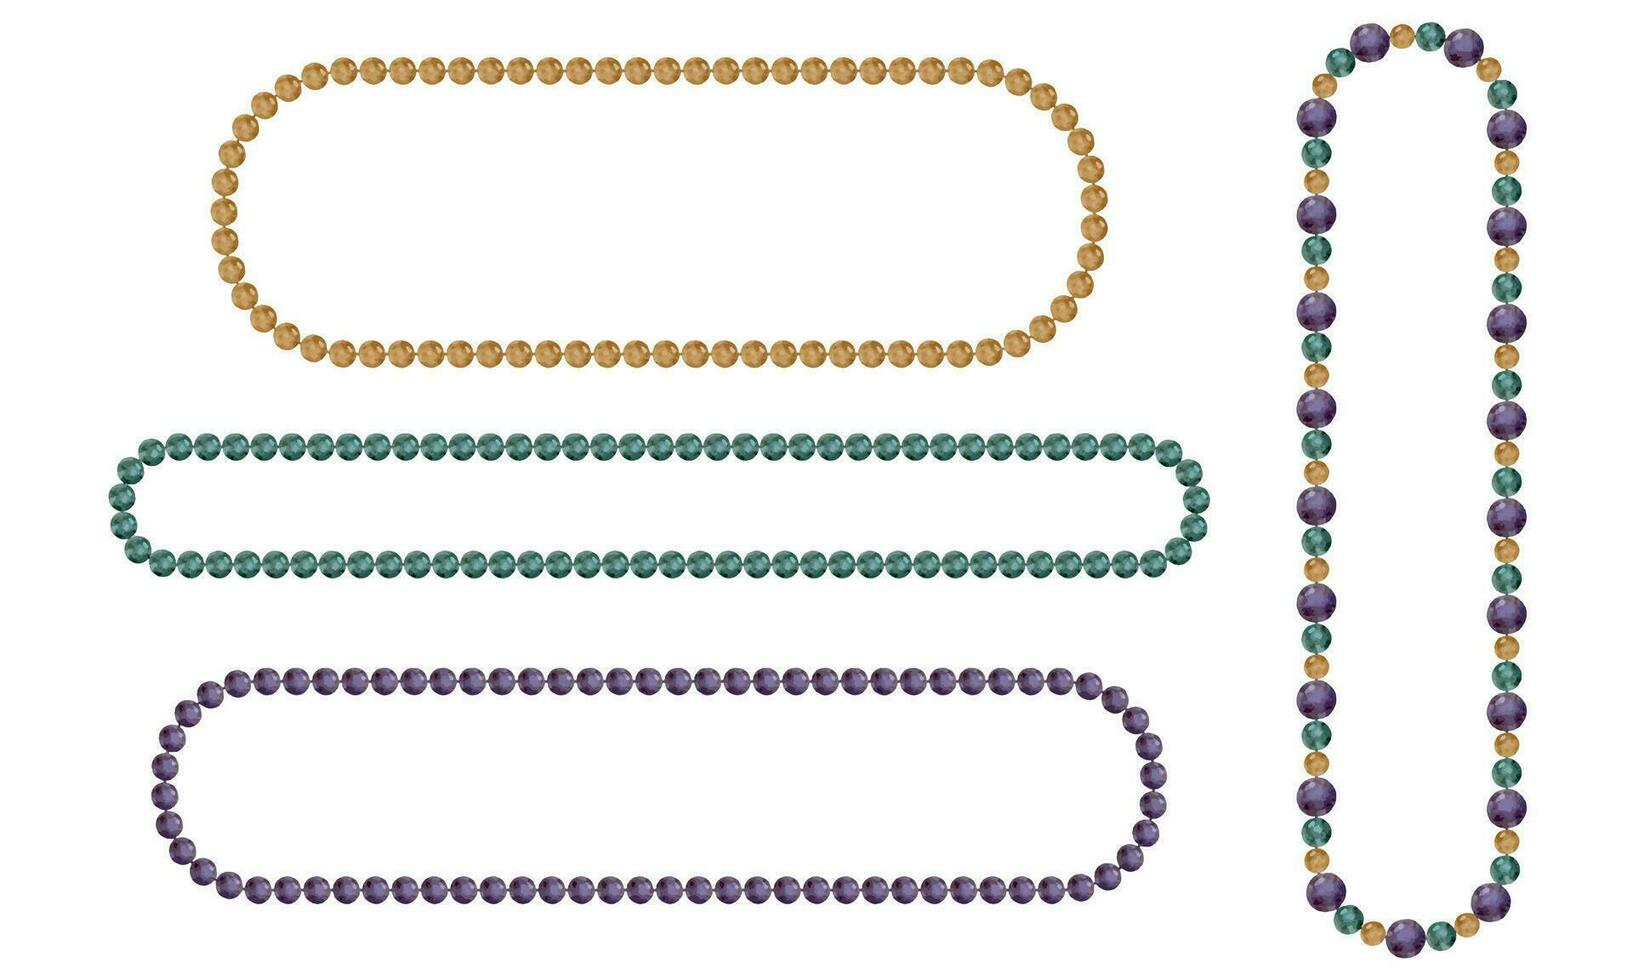 Hand gezeichnet Aquarell Karneval gras Karneval Symbole. Zeichenfolge von Perlen Halskette Schmuck wirft im traditionell Farbe. Single Objekt isoliert auf Weiß Hintergrund. Design zum Party Einladung, drucken, Geschäft vektor